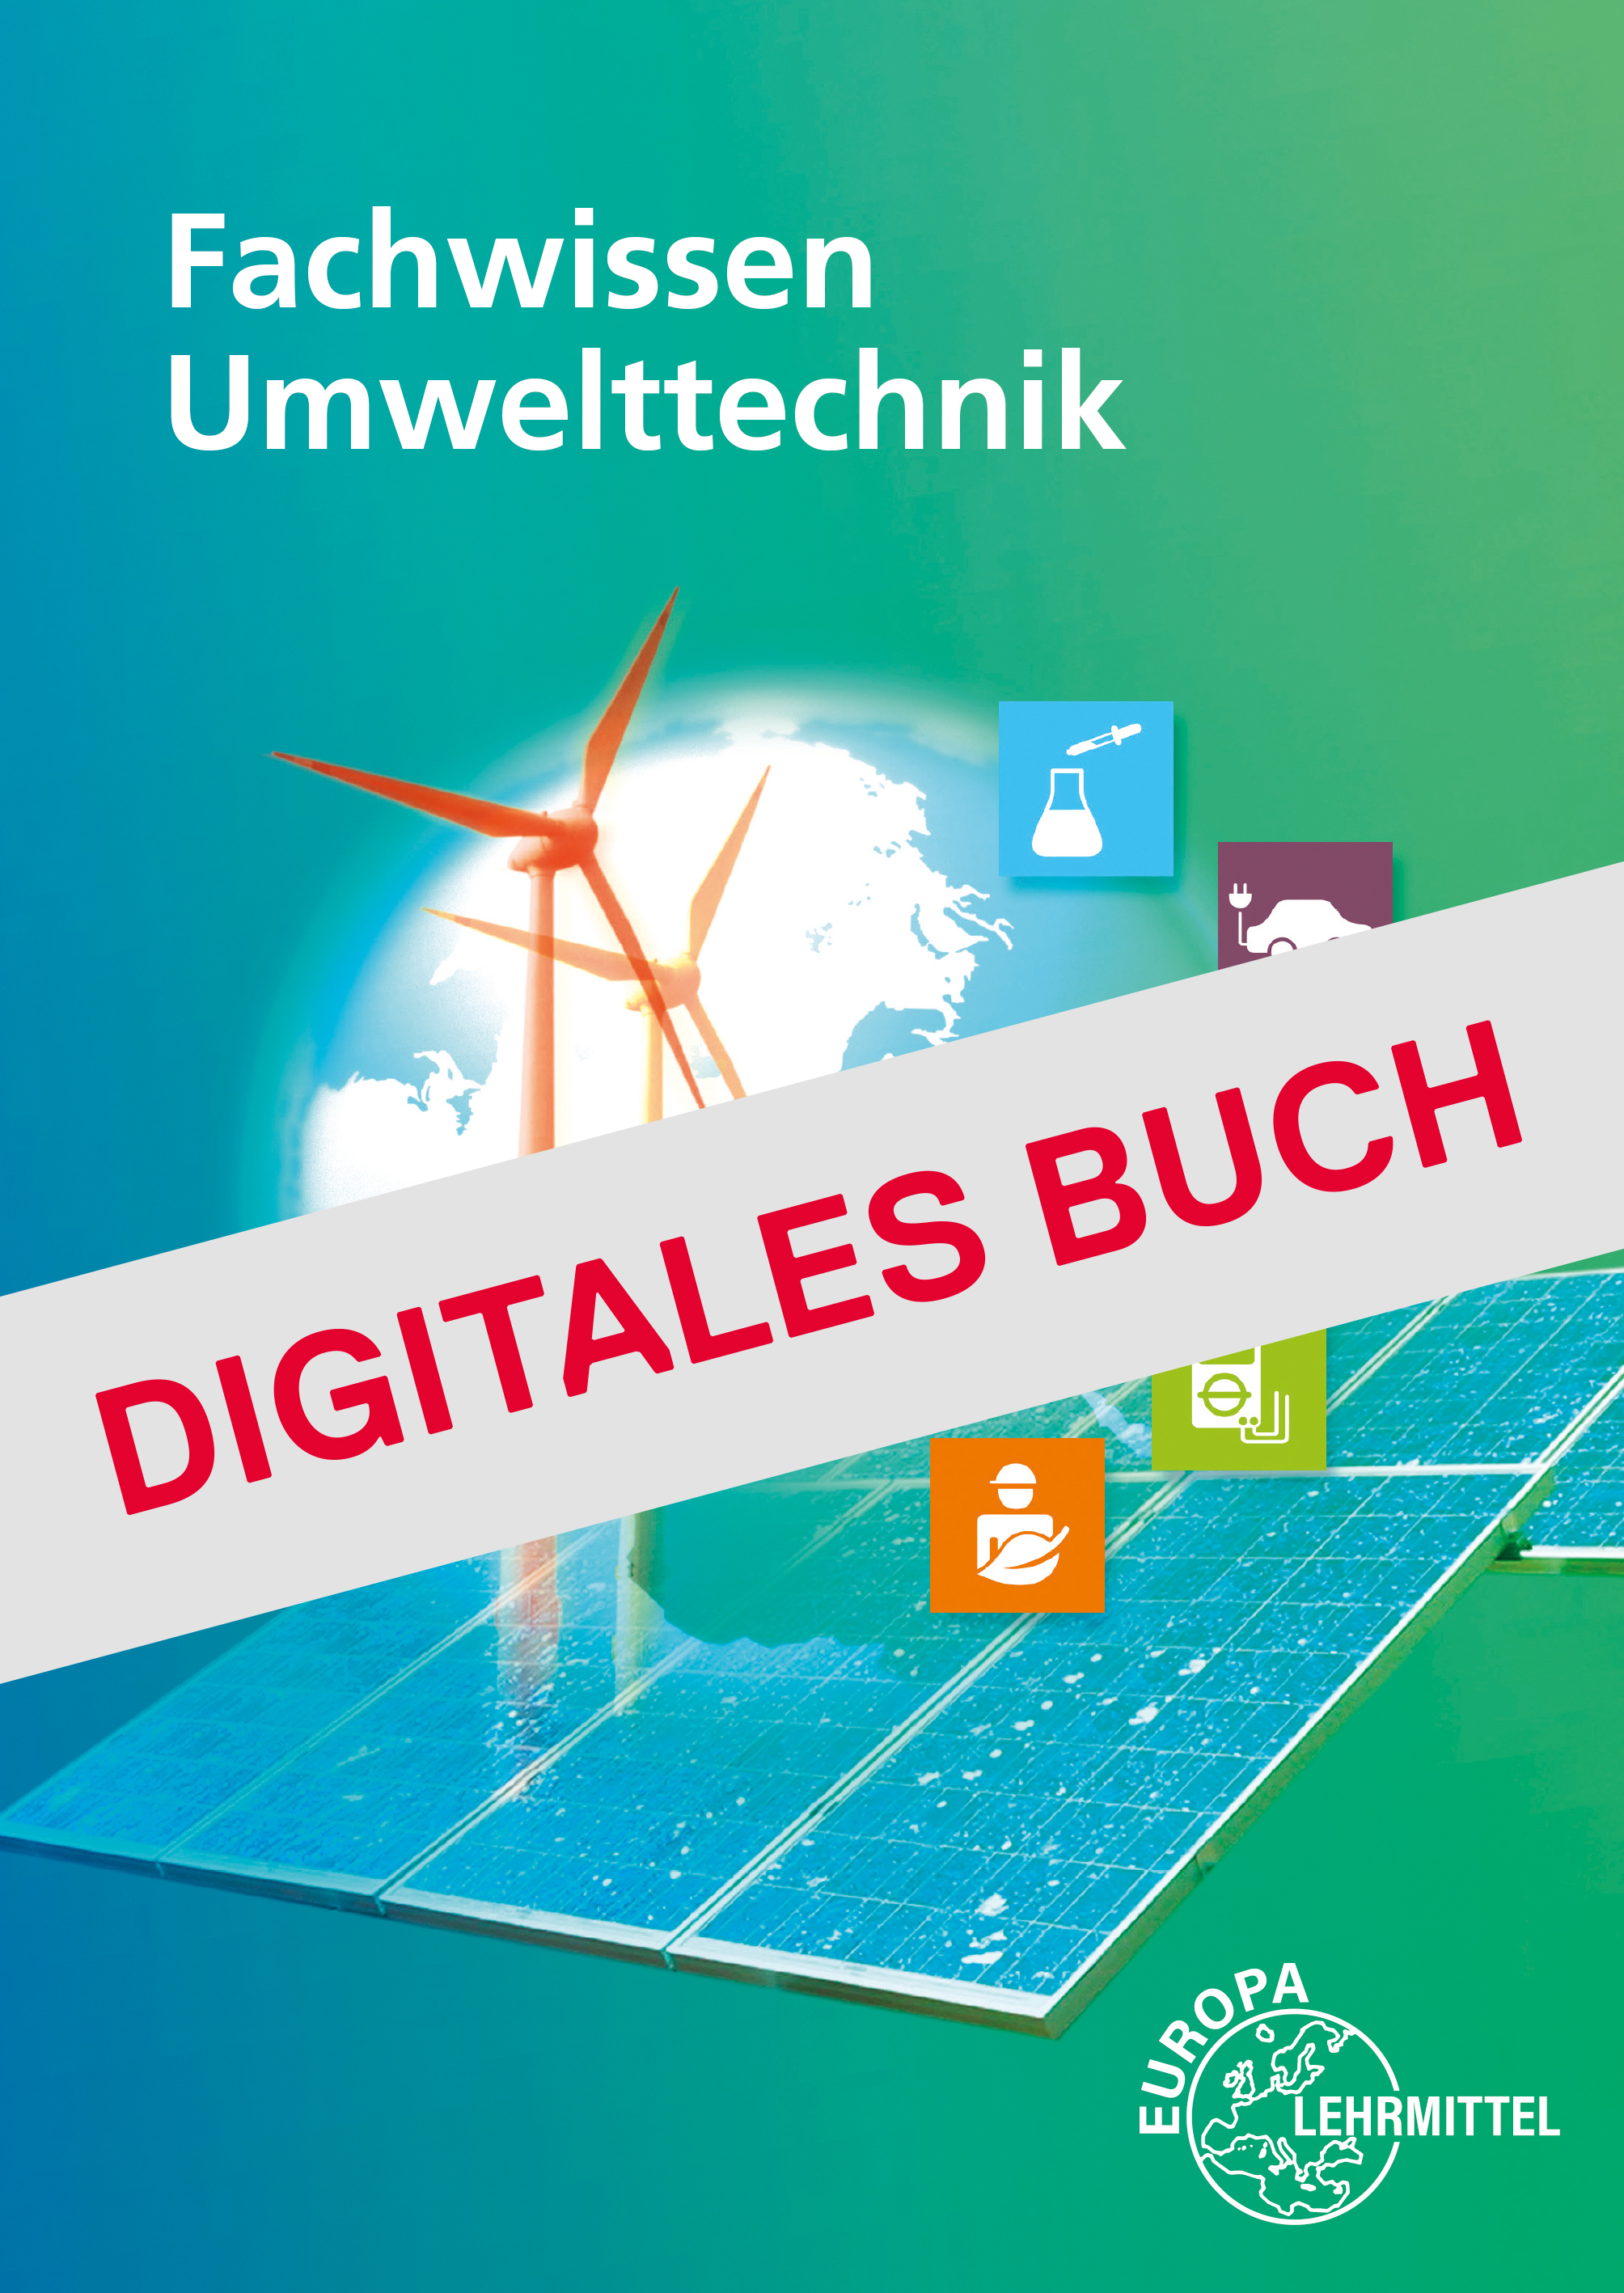 Fachwissen Umwelttechnik - Digitales Buch